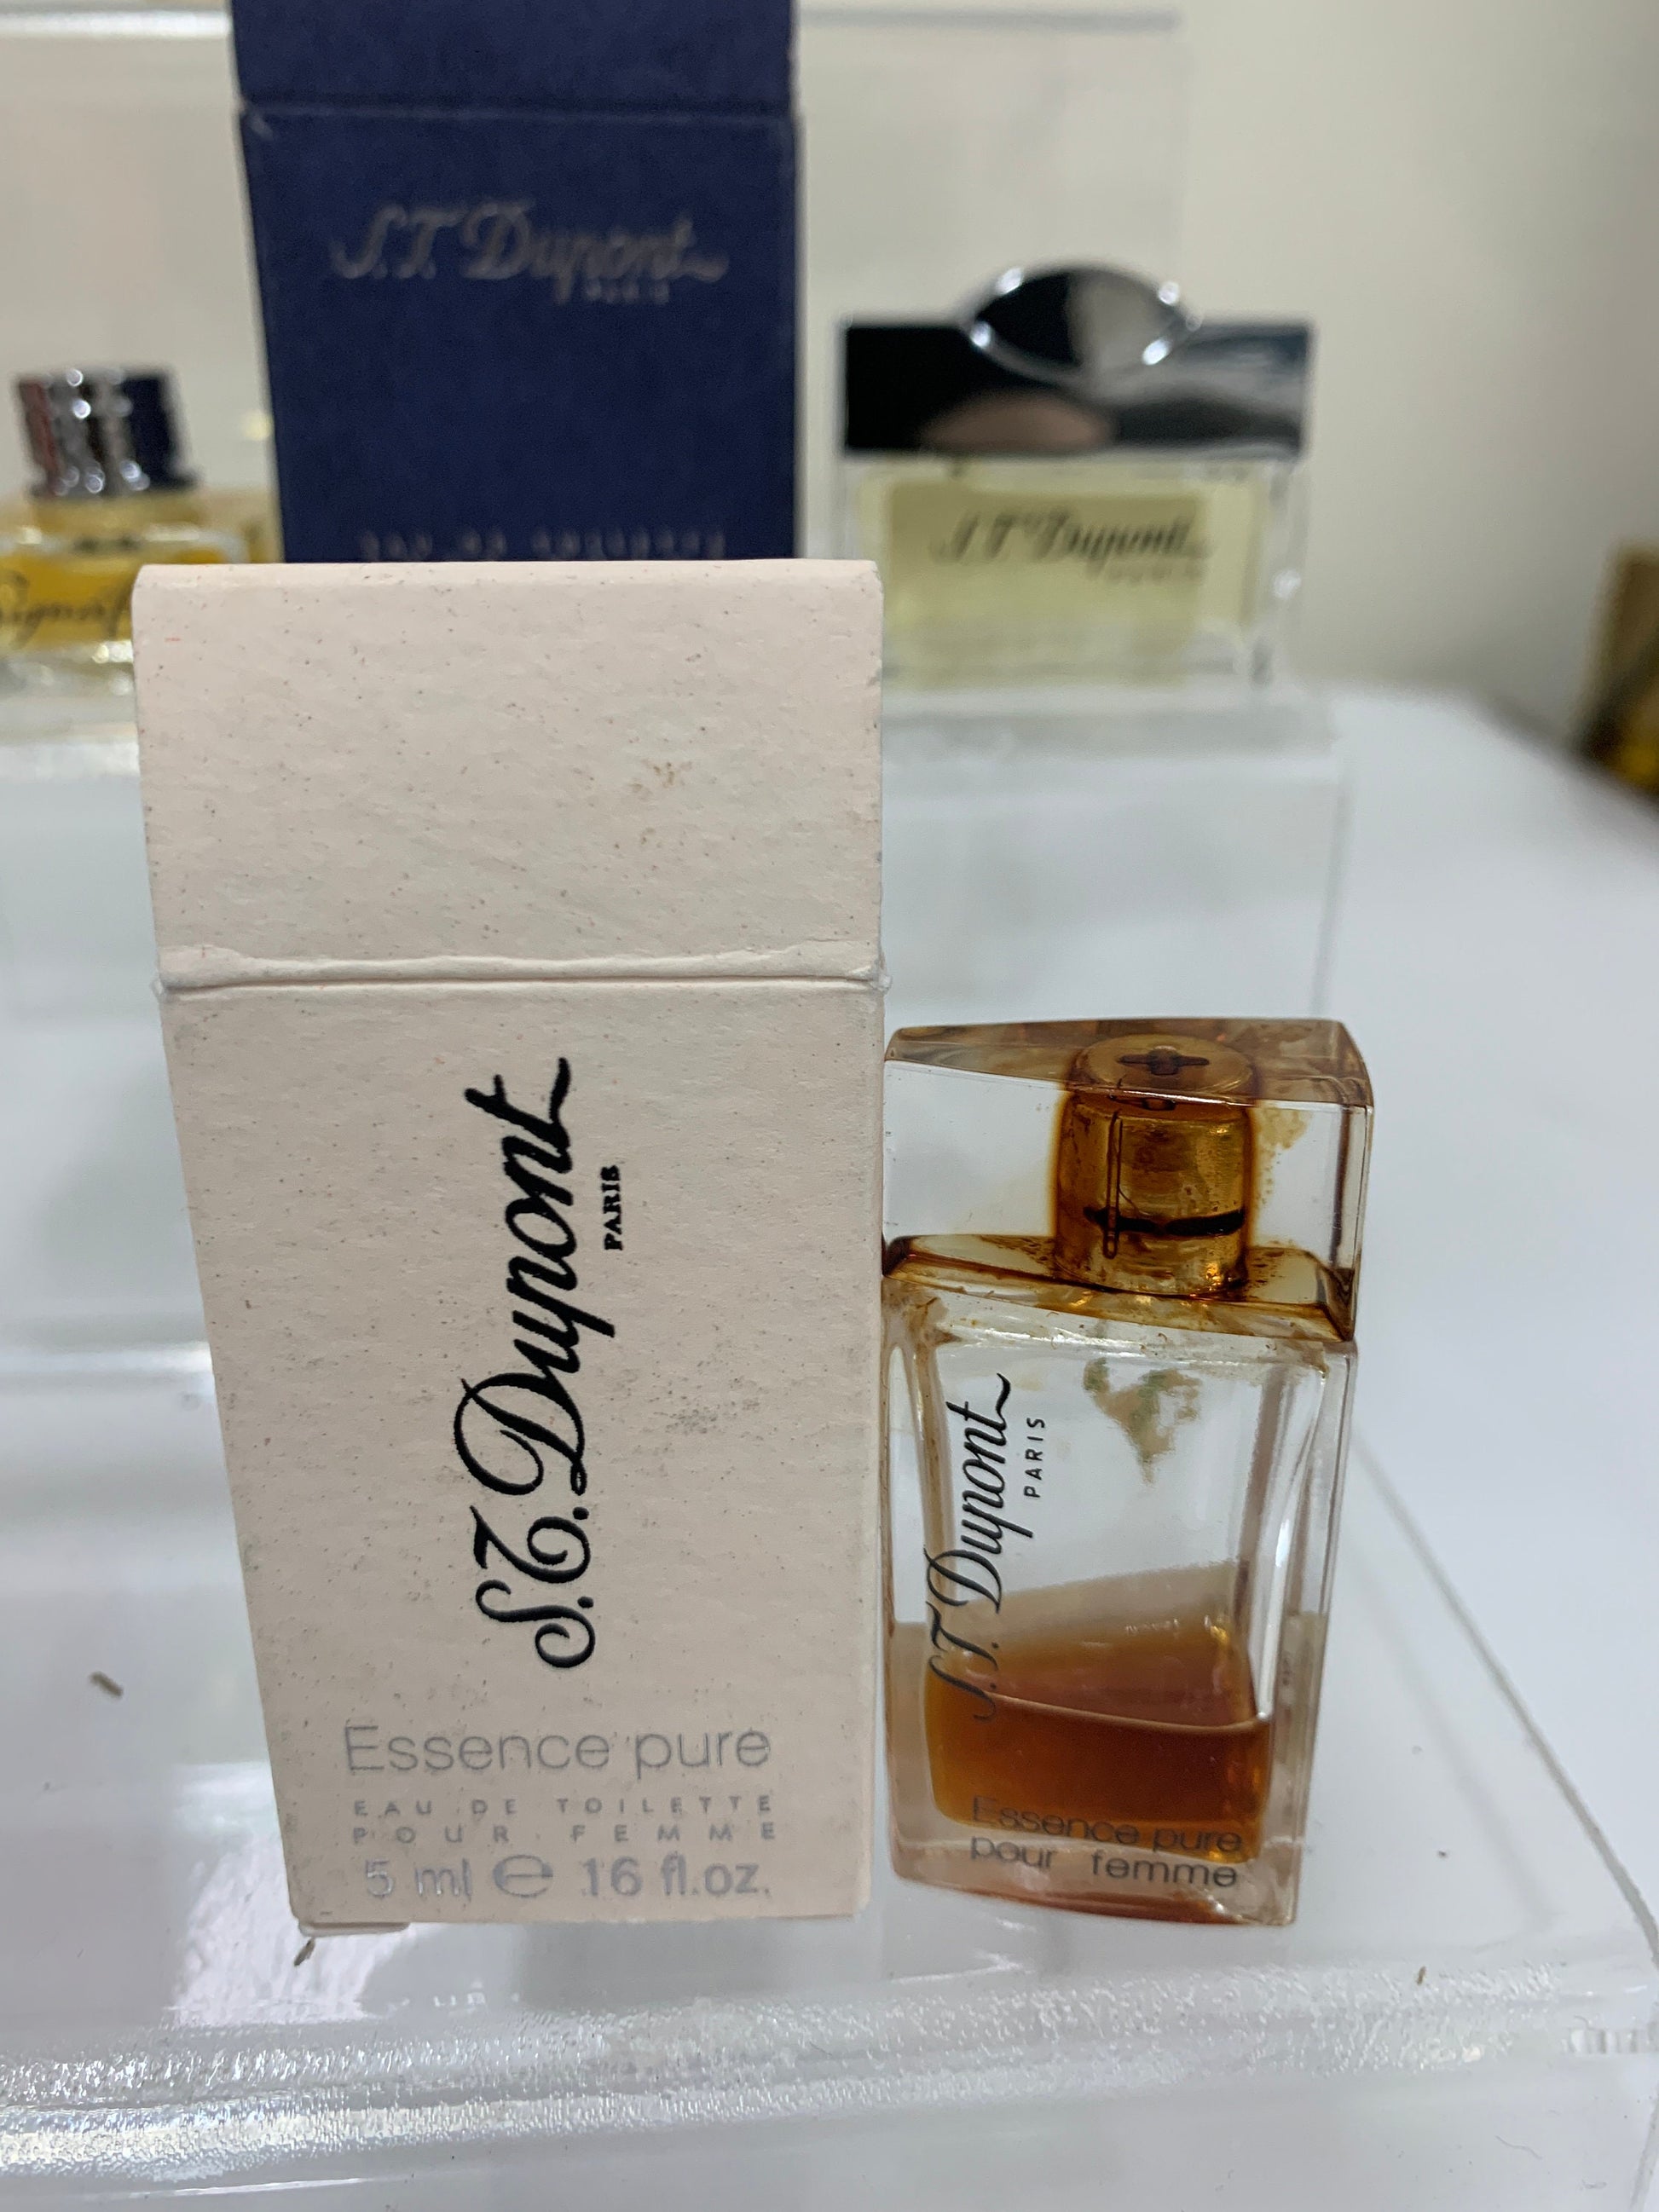 Pure Poison Dior Eau De Parfume 5 Ml 0.17 Floz Perfume 